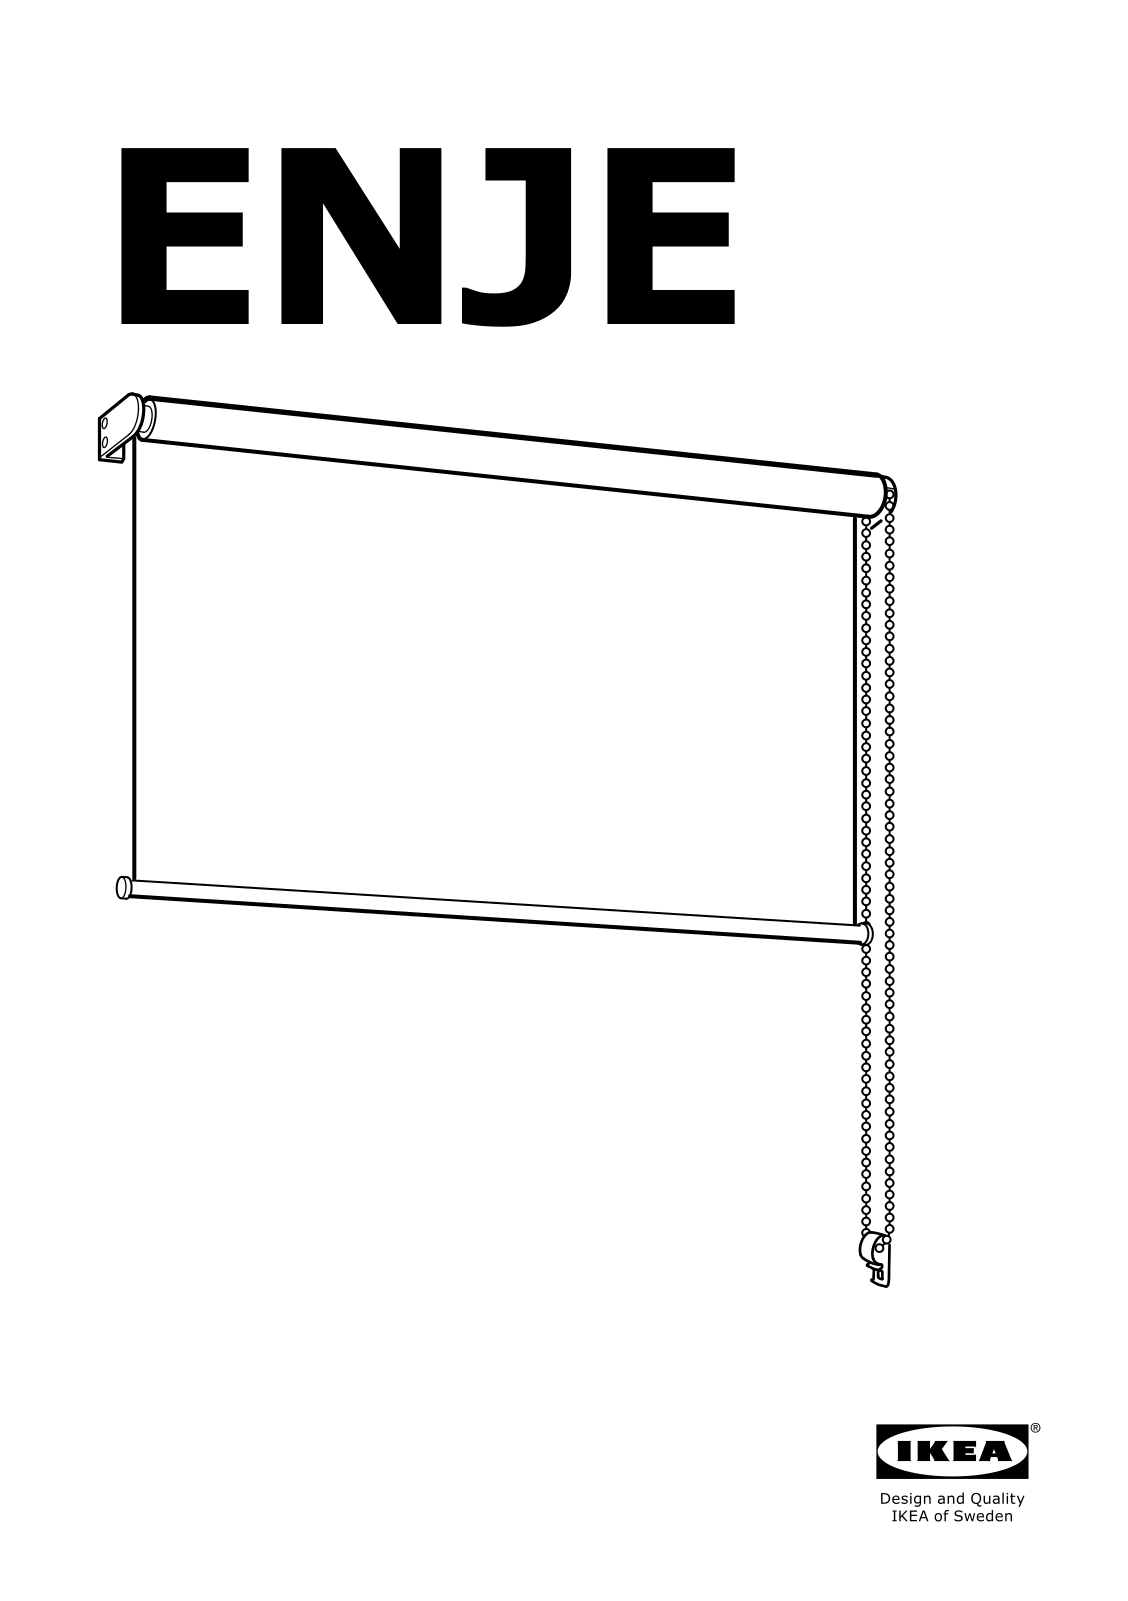 IKEA ENJE User Manual